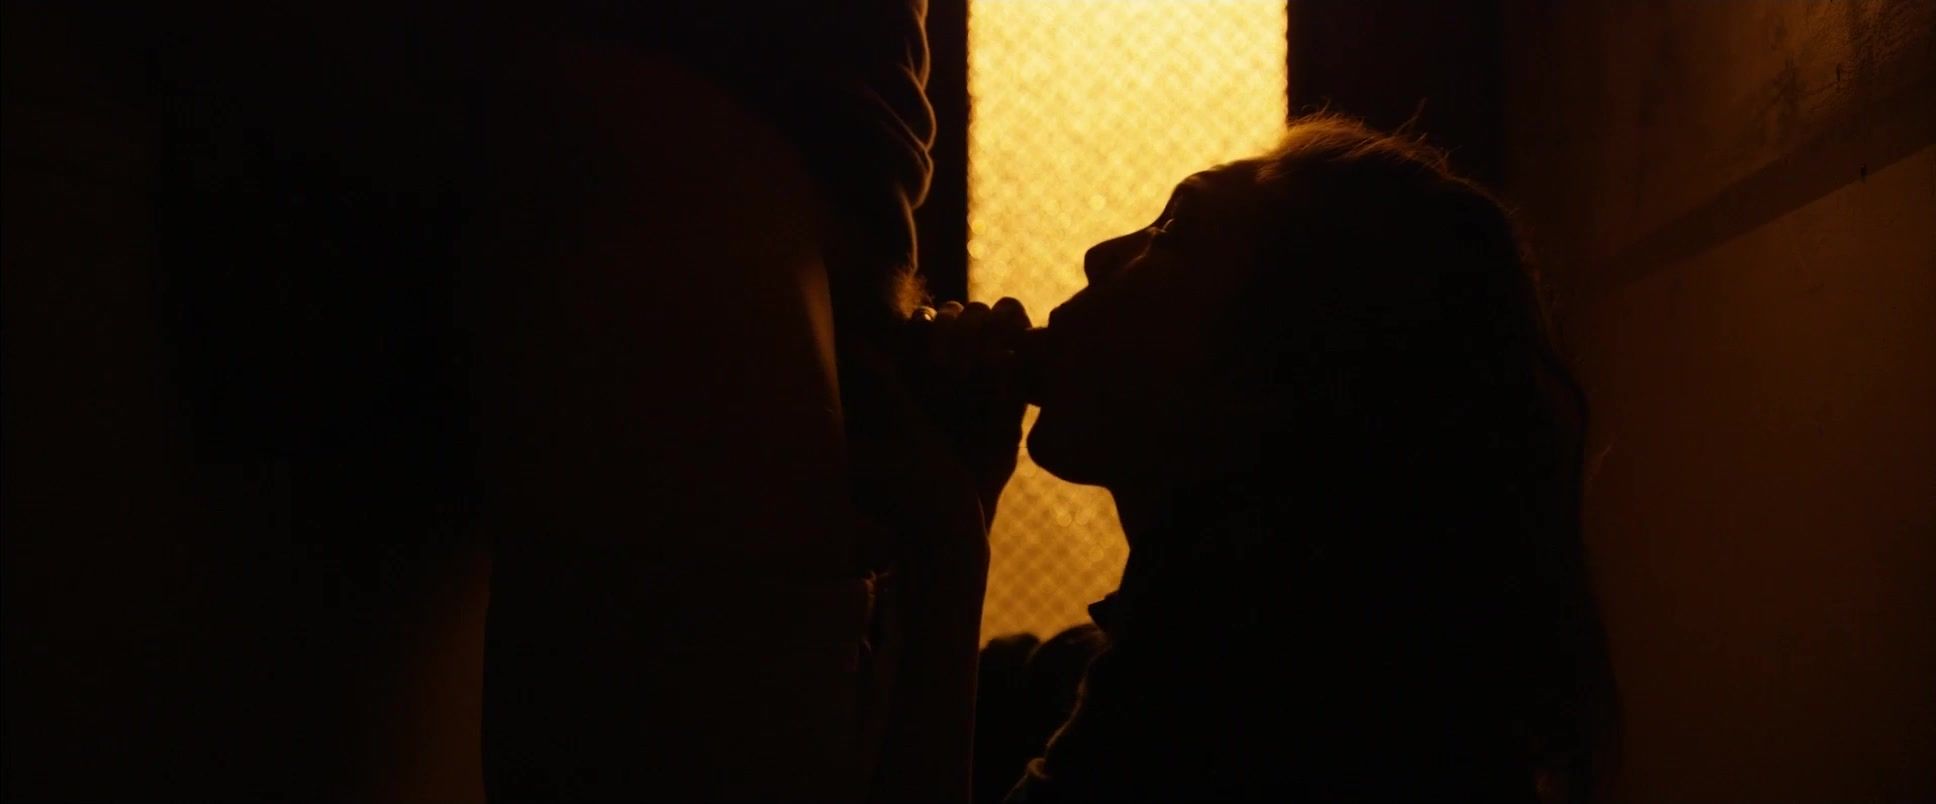 Putinha Best Mainstream Adult Film | Explicit Uncensored Sex Scenes of the movie "Love" Publico